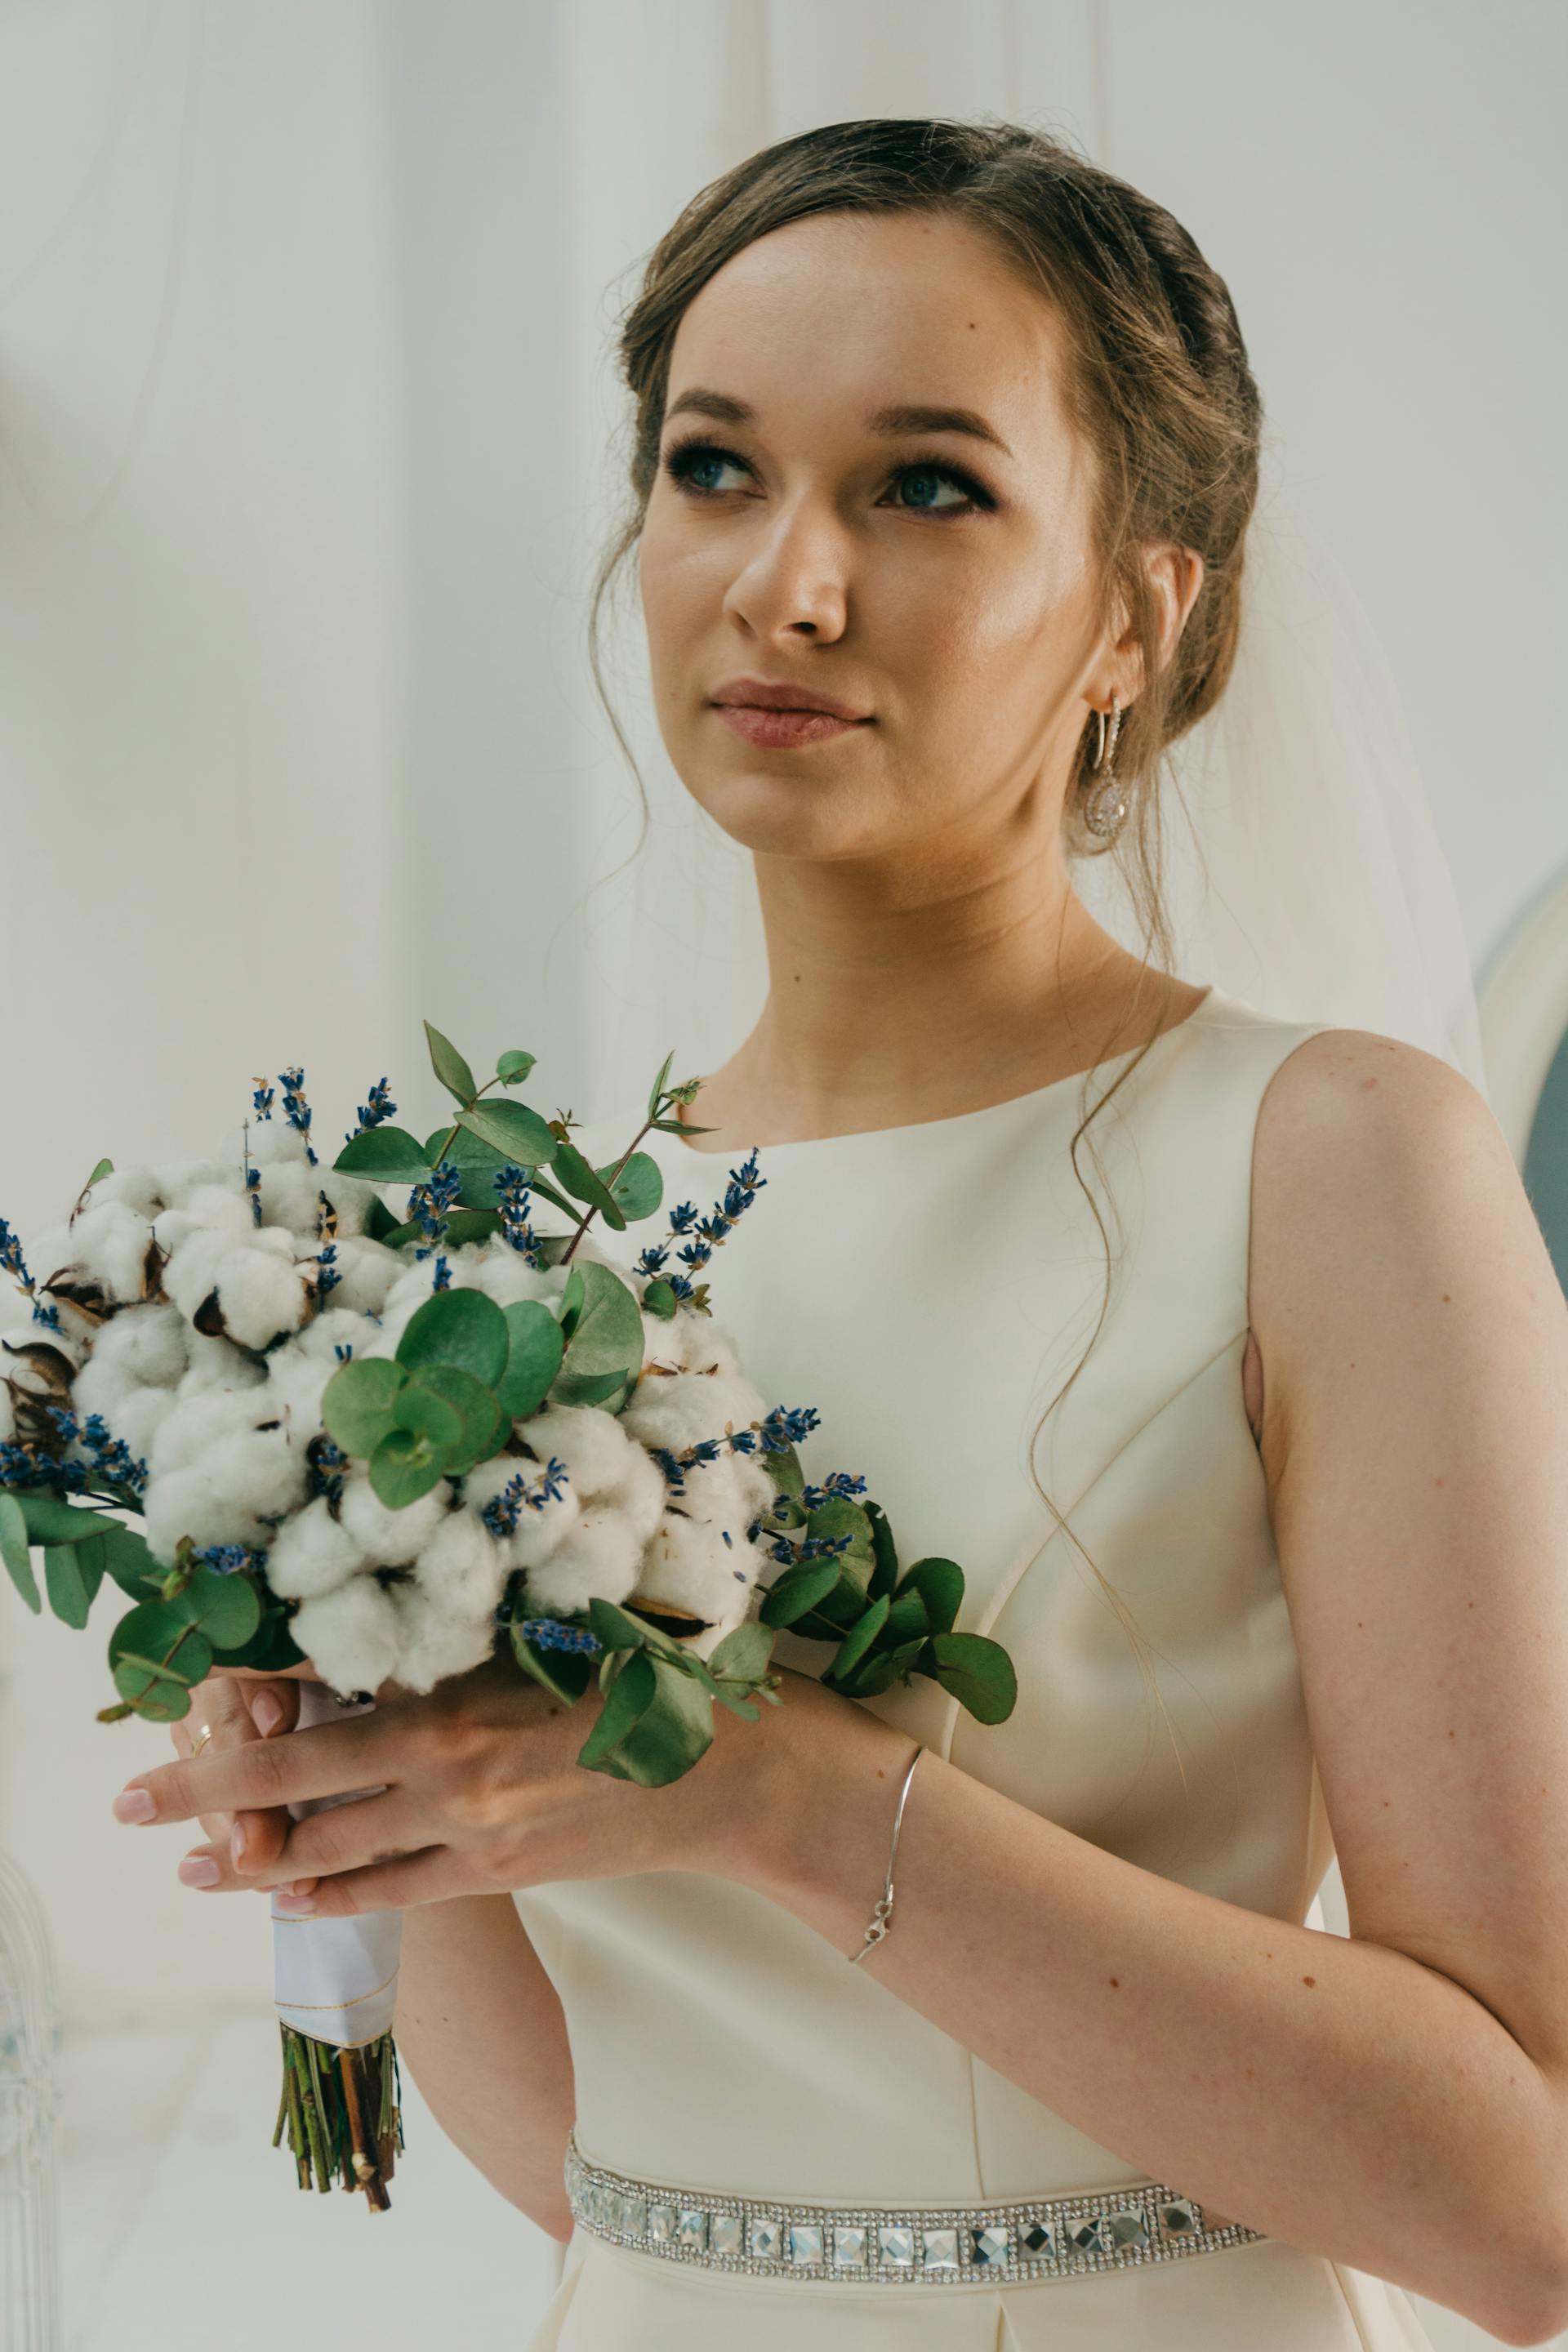 A close-up of a bride | Source: Pexels